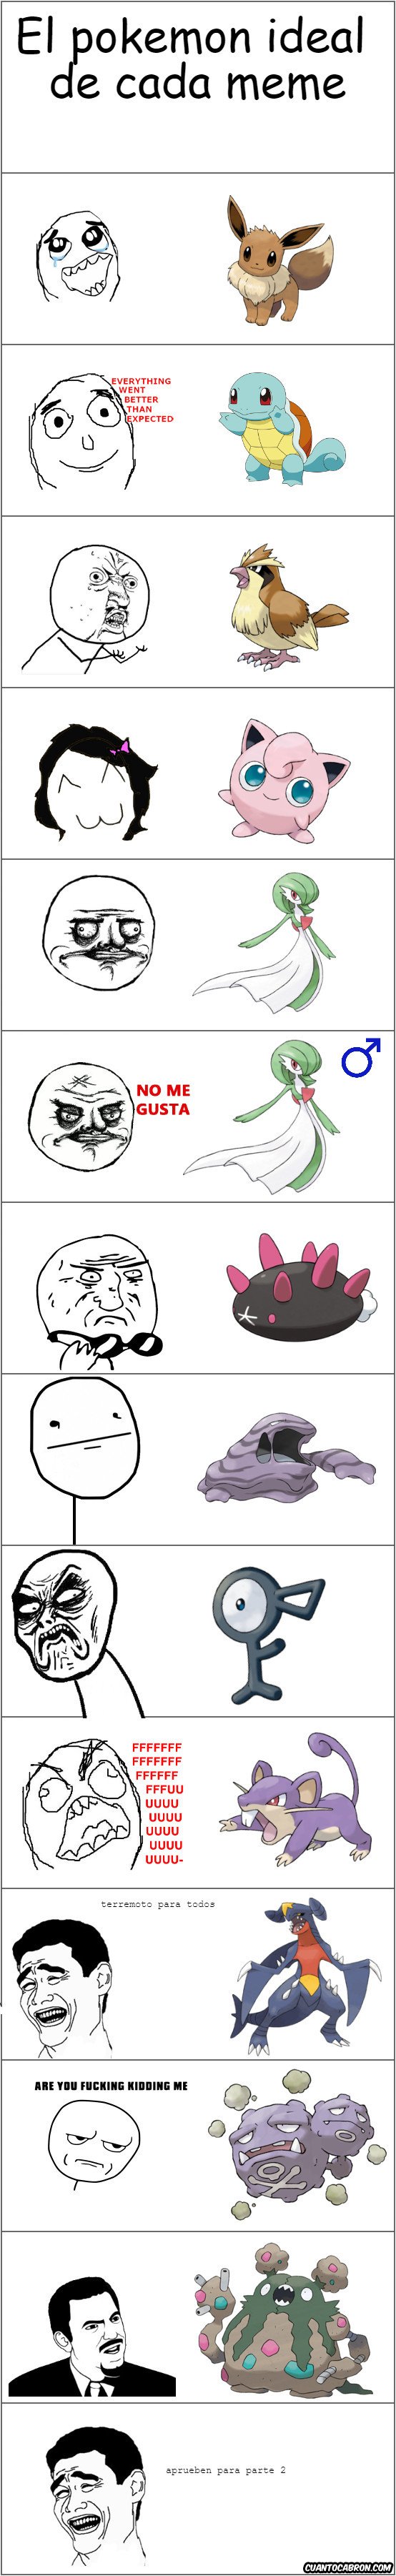 Yao - Pokémon edición rage comic